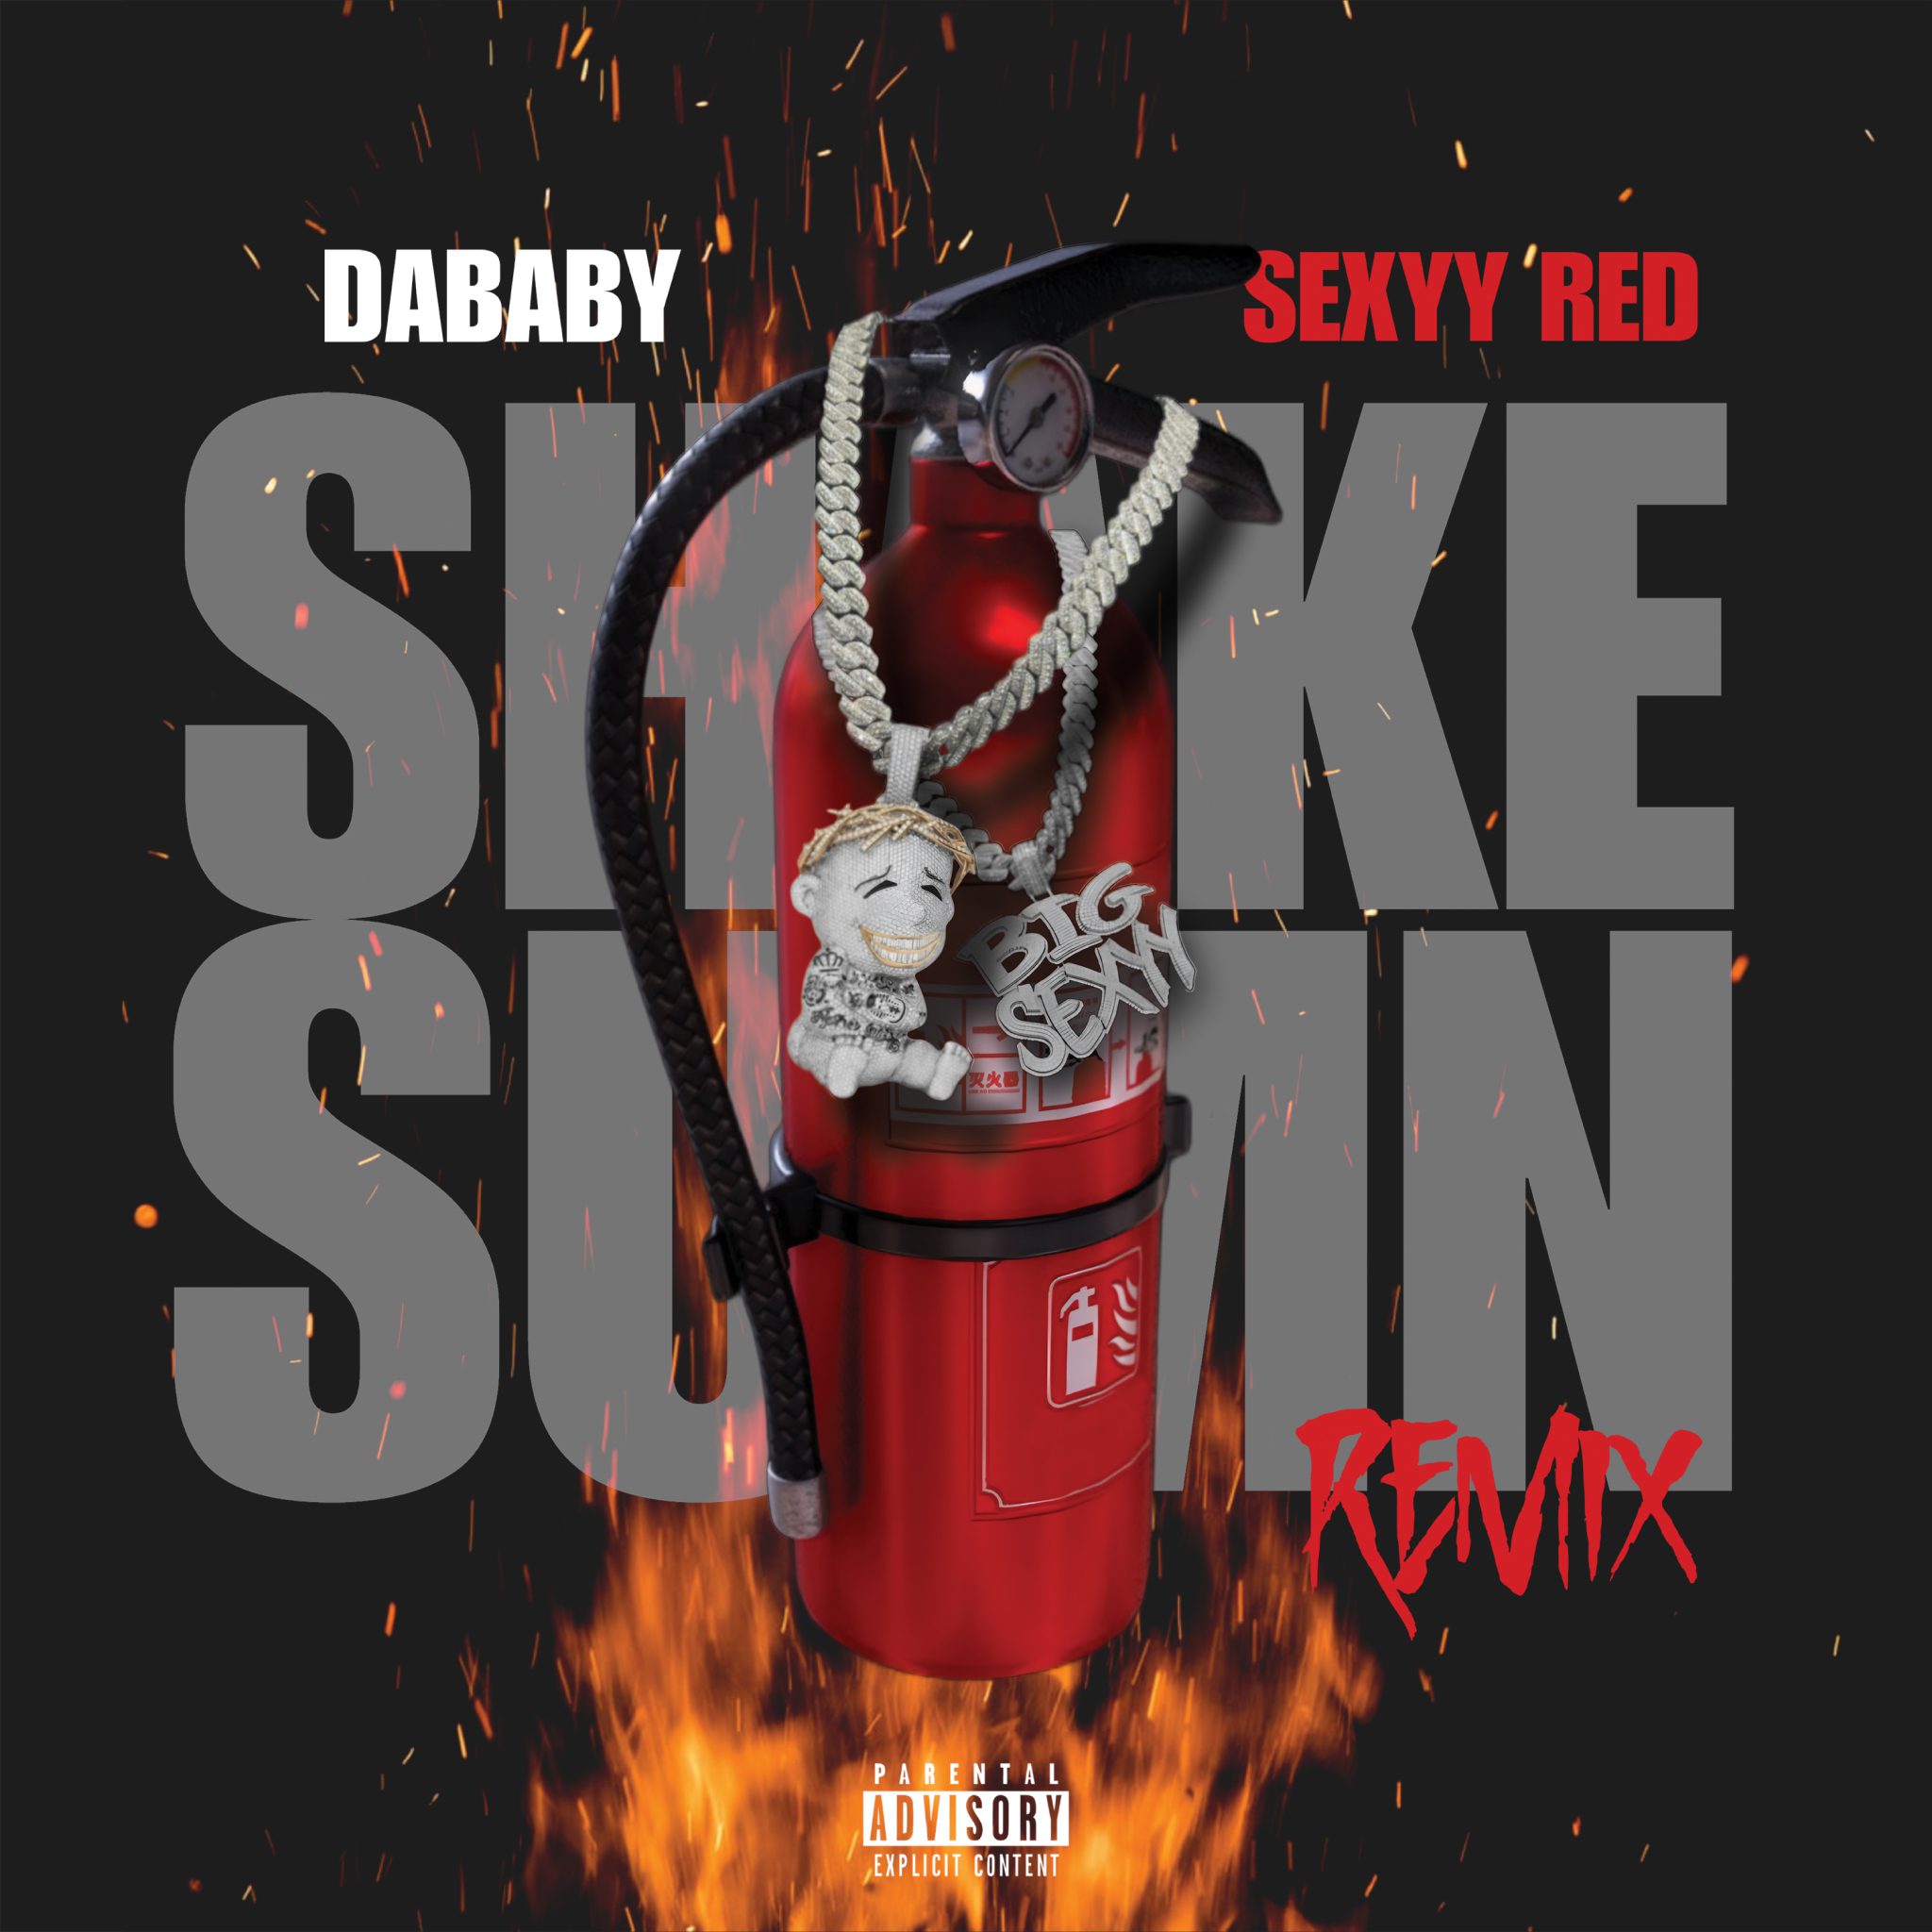 Da Baby Smoke Sumn single via 360 MAGAZINE.